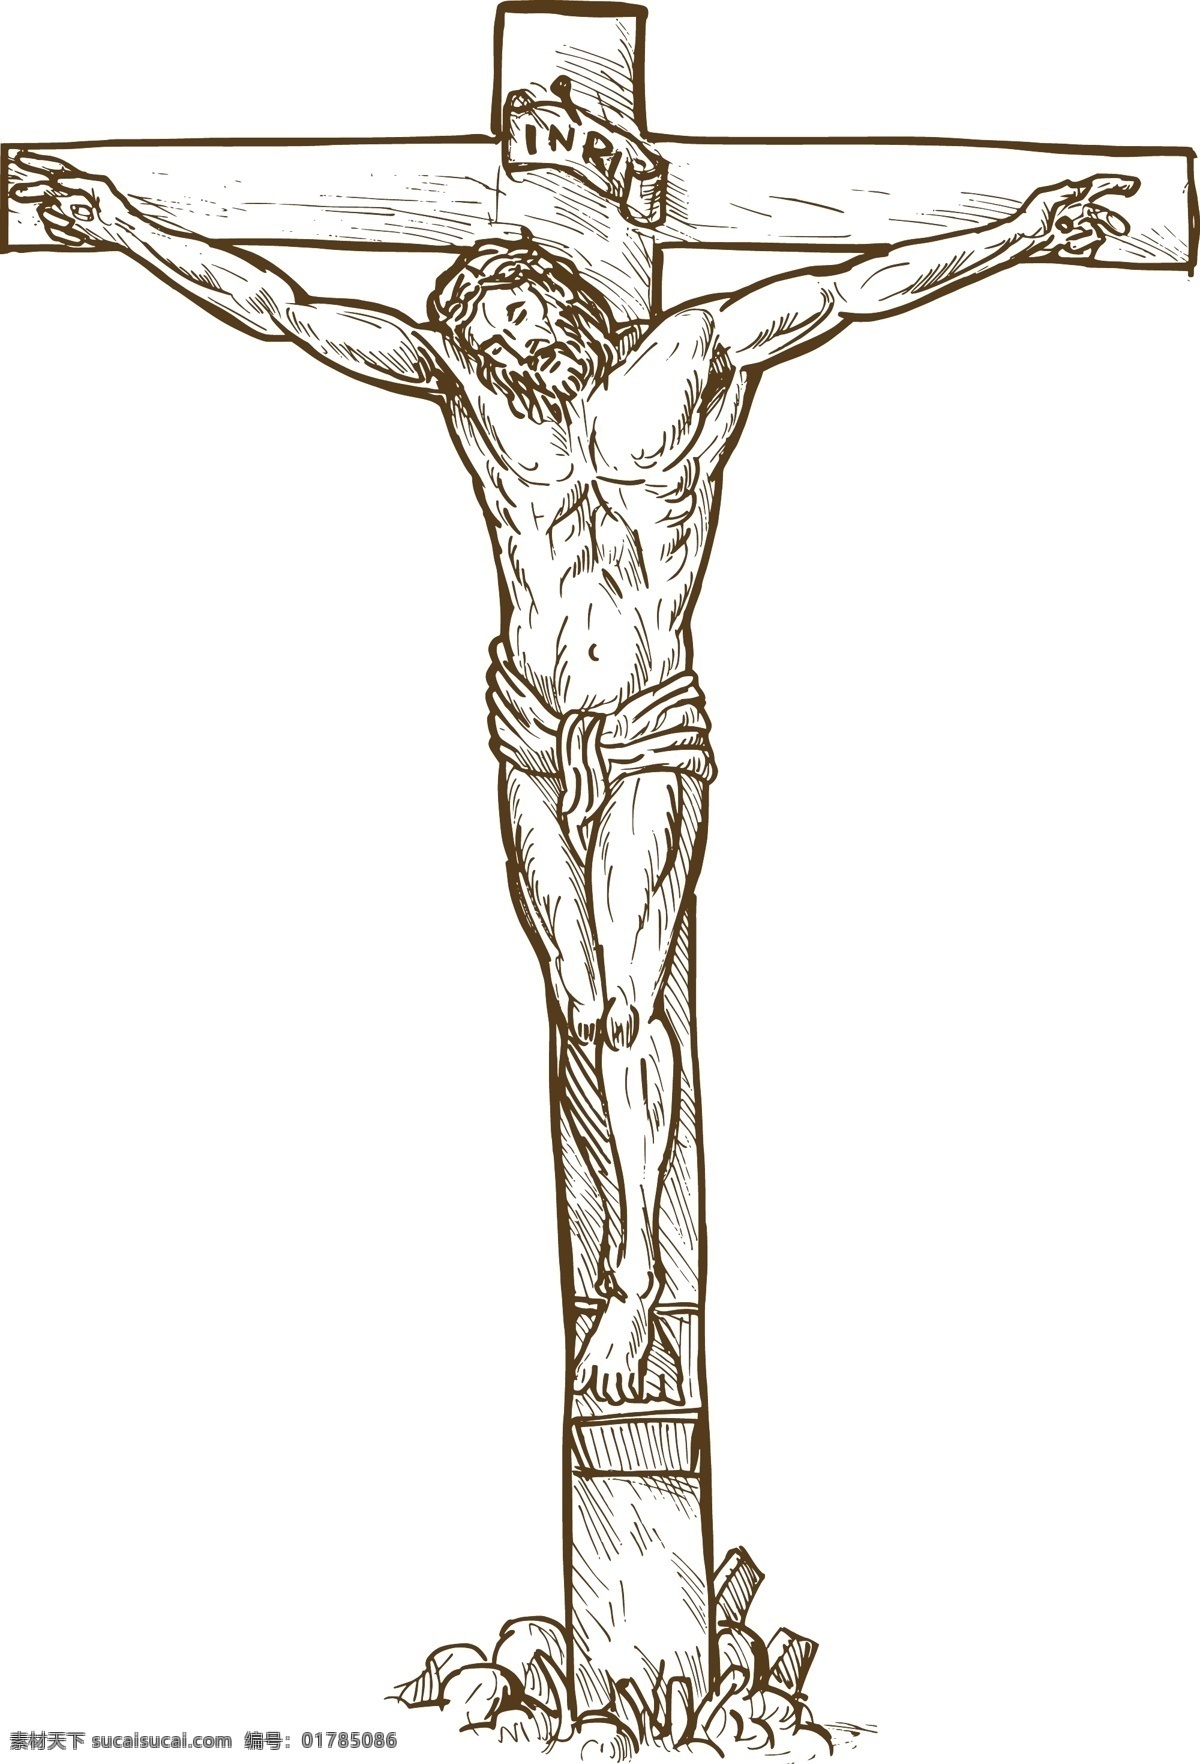 耶稣基督 十字 架上 矢量图 日常生活